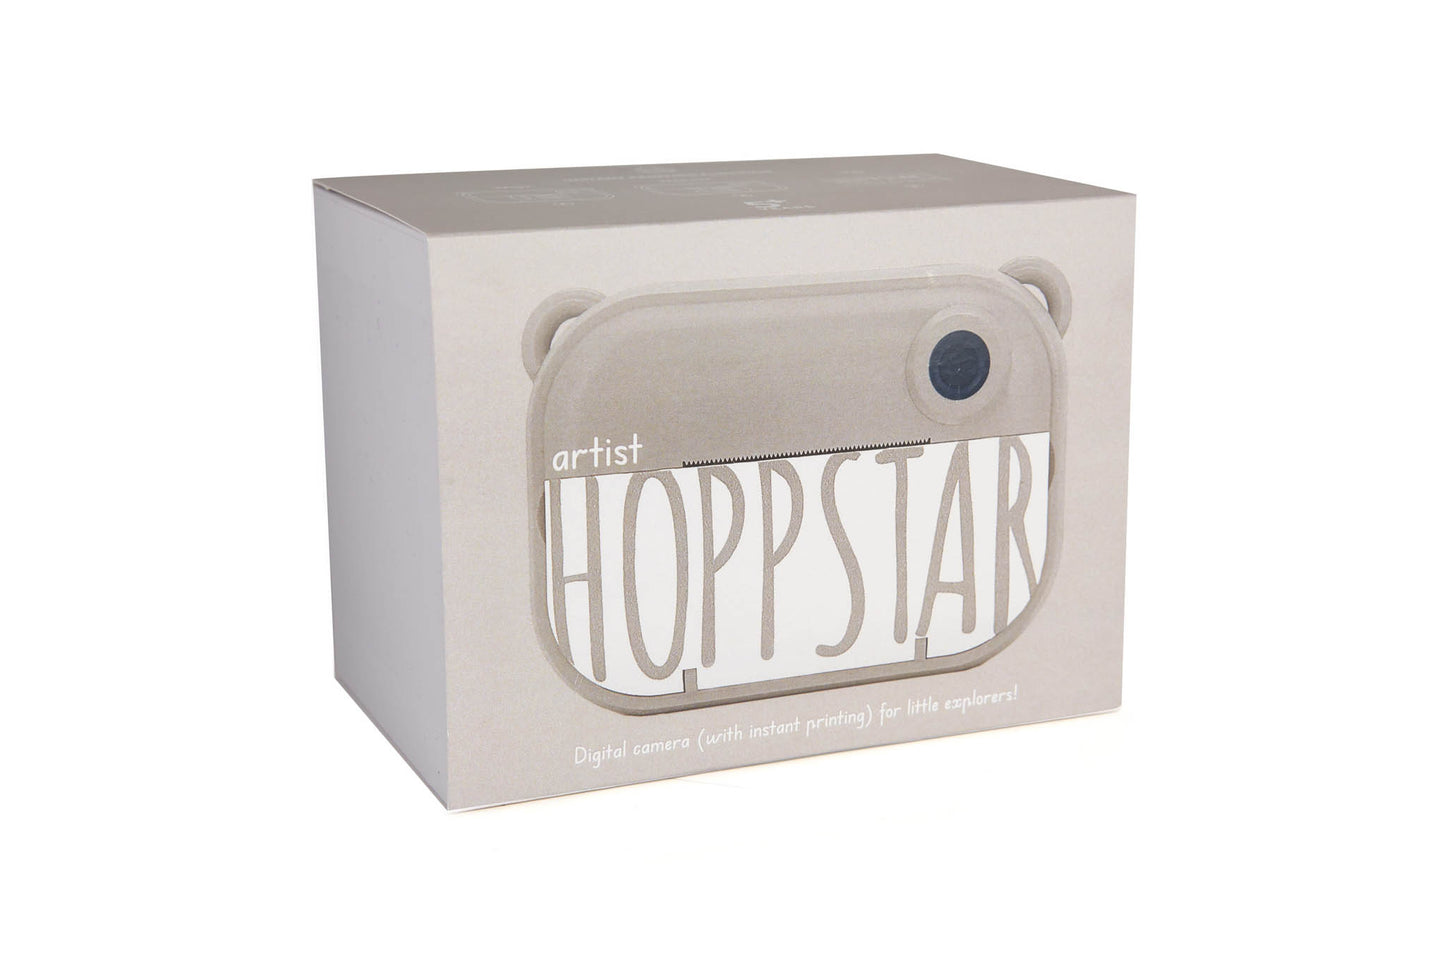 Hoppstar - Kinder Digitalkamera mit Sofortdruckfunktion "Artist" | oat